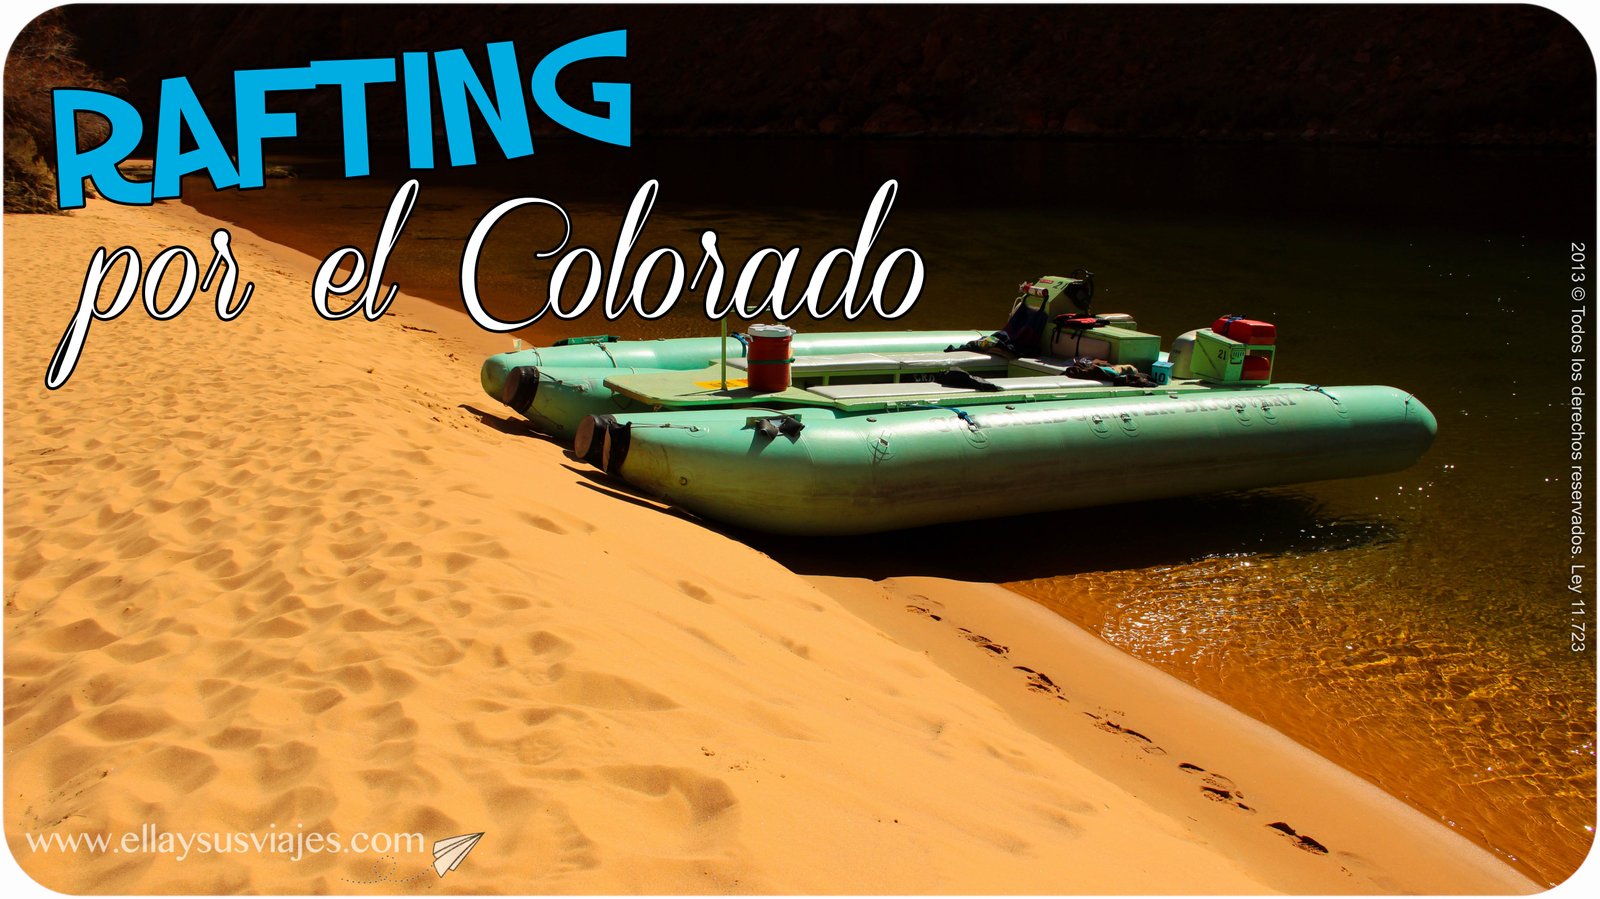 En este momento estás viendo Page y Rafting por el Colorado